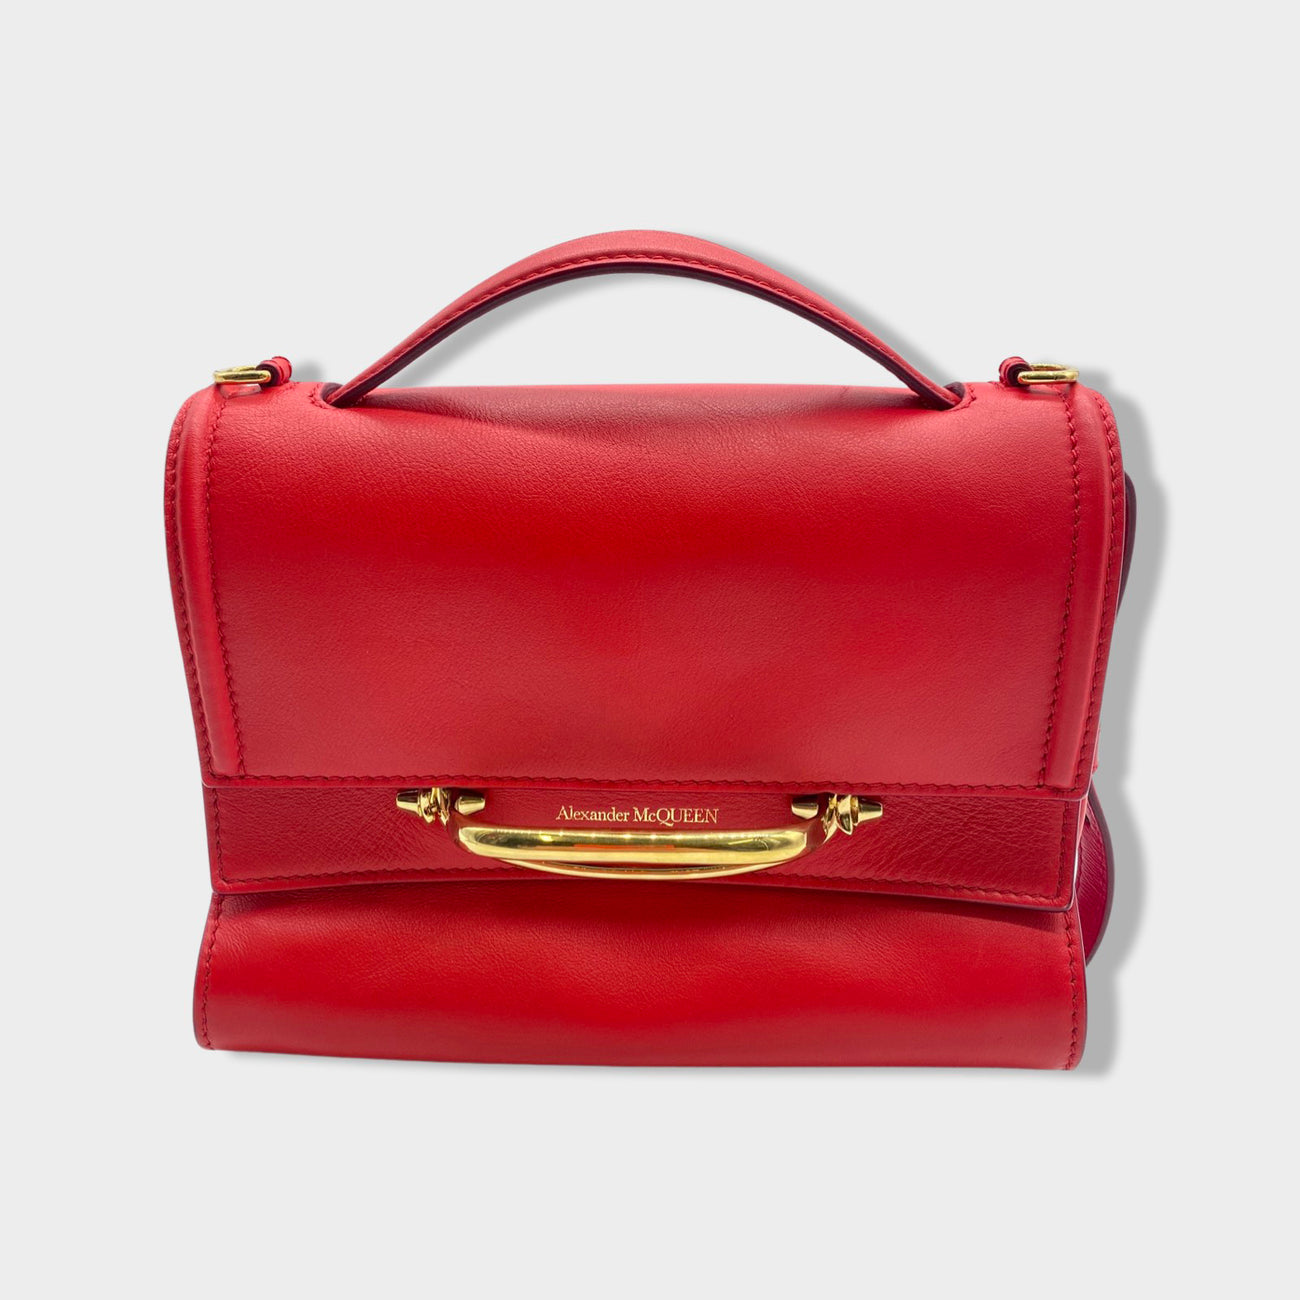 Alexander McQueen red Leather Jewelled Satchel Bag | Harrods UK